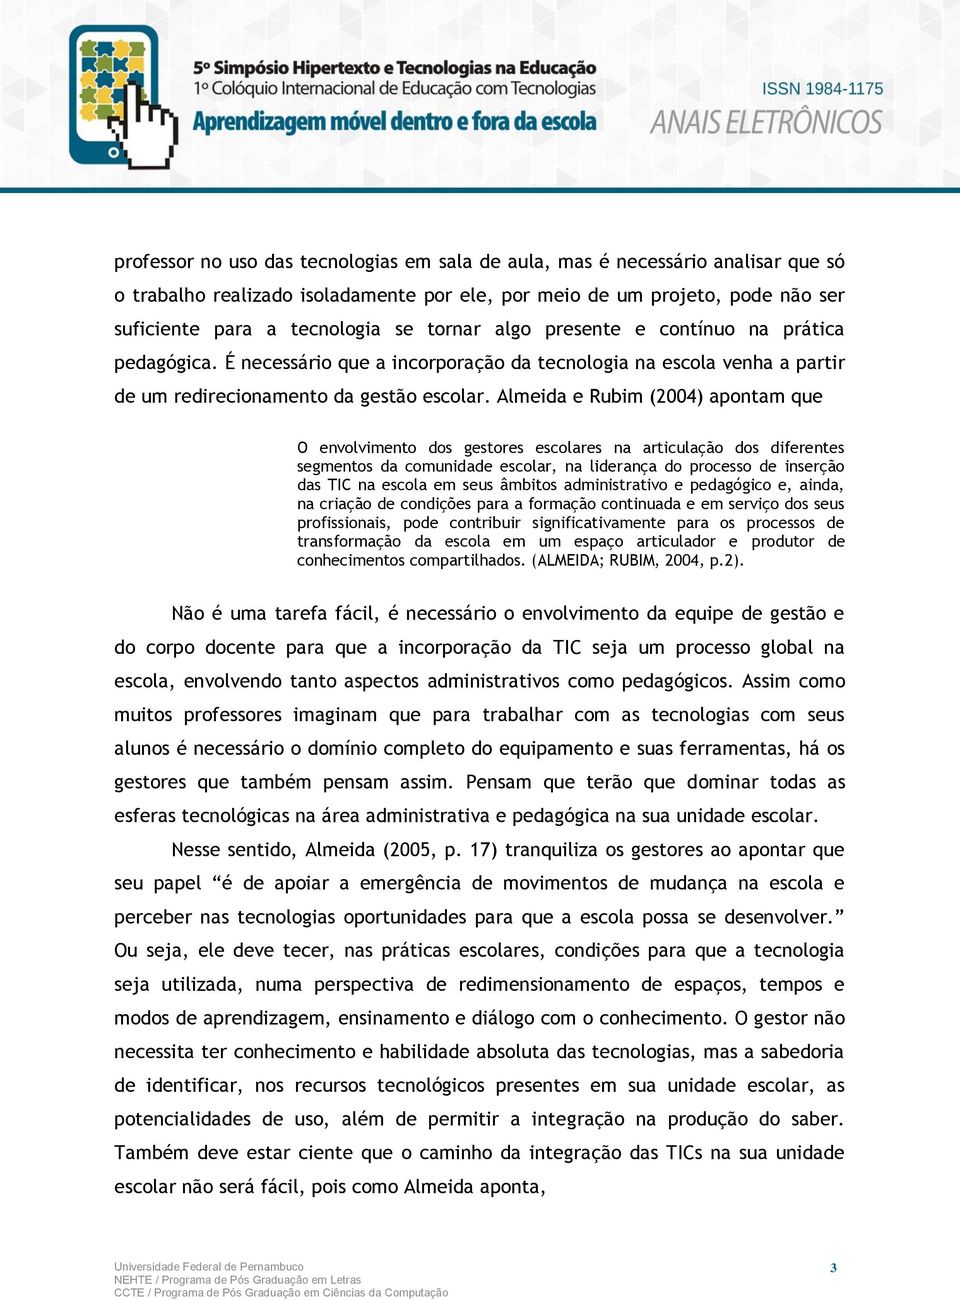 Almeida e Rubim (2004) apontam que O envolvimento dos gestores escolares na articulação dos diferentes segmentos da comunidade escolar, na liderança do processo de inserção das TIC na escola em seus